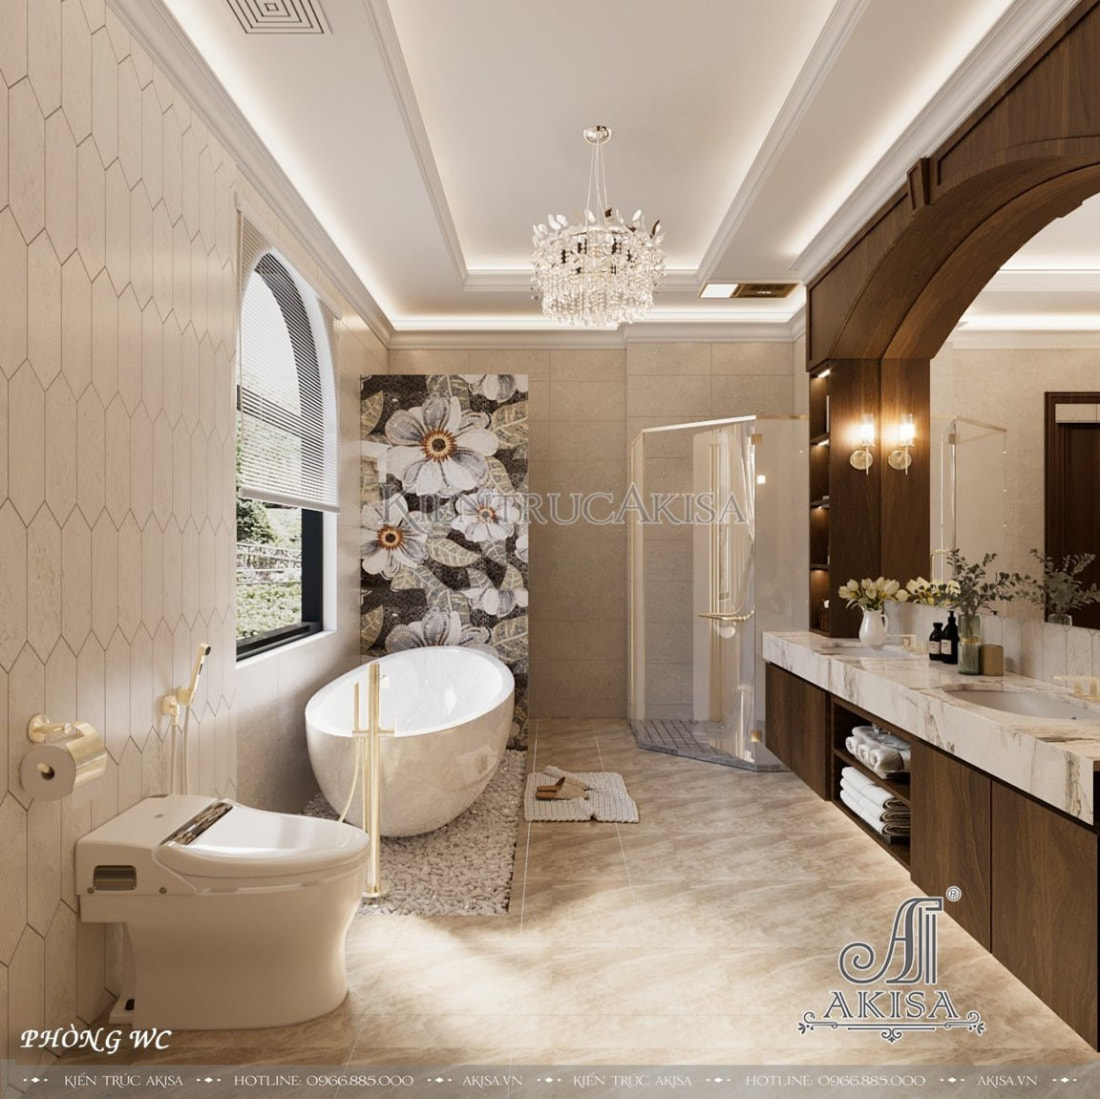 Bồn tắm lớn kết hợp với không gian nội thất tân cổ điển châu âu sang trọng giúp gia chủ tận hưởng những giờ phút thư giãn tuyệt vời.  